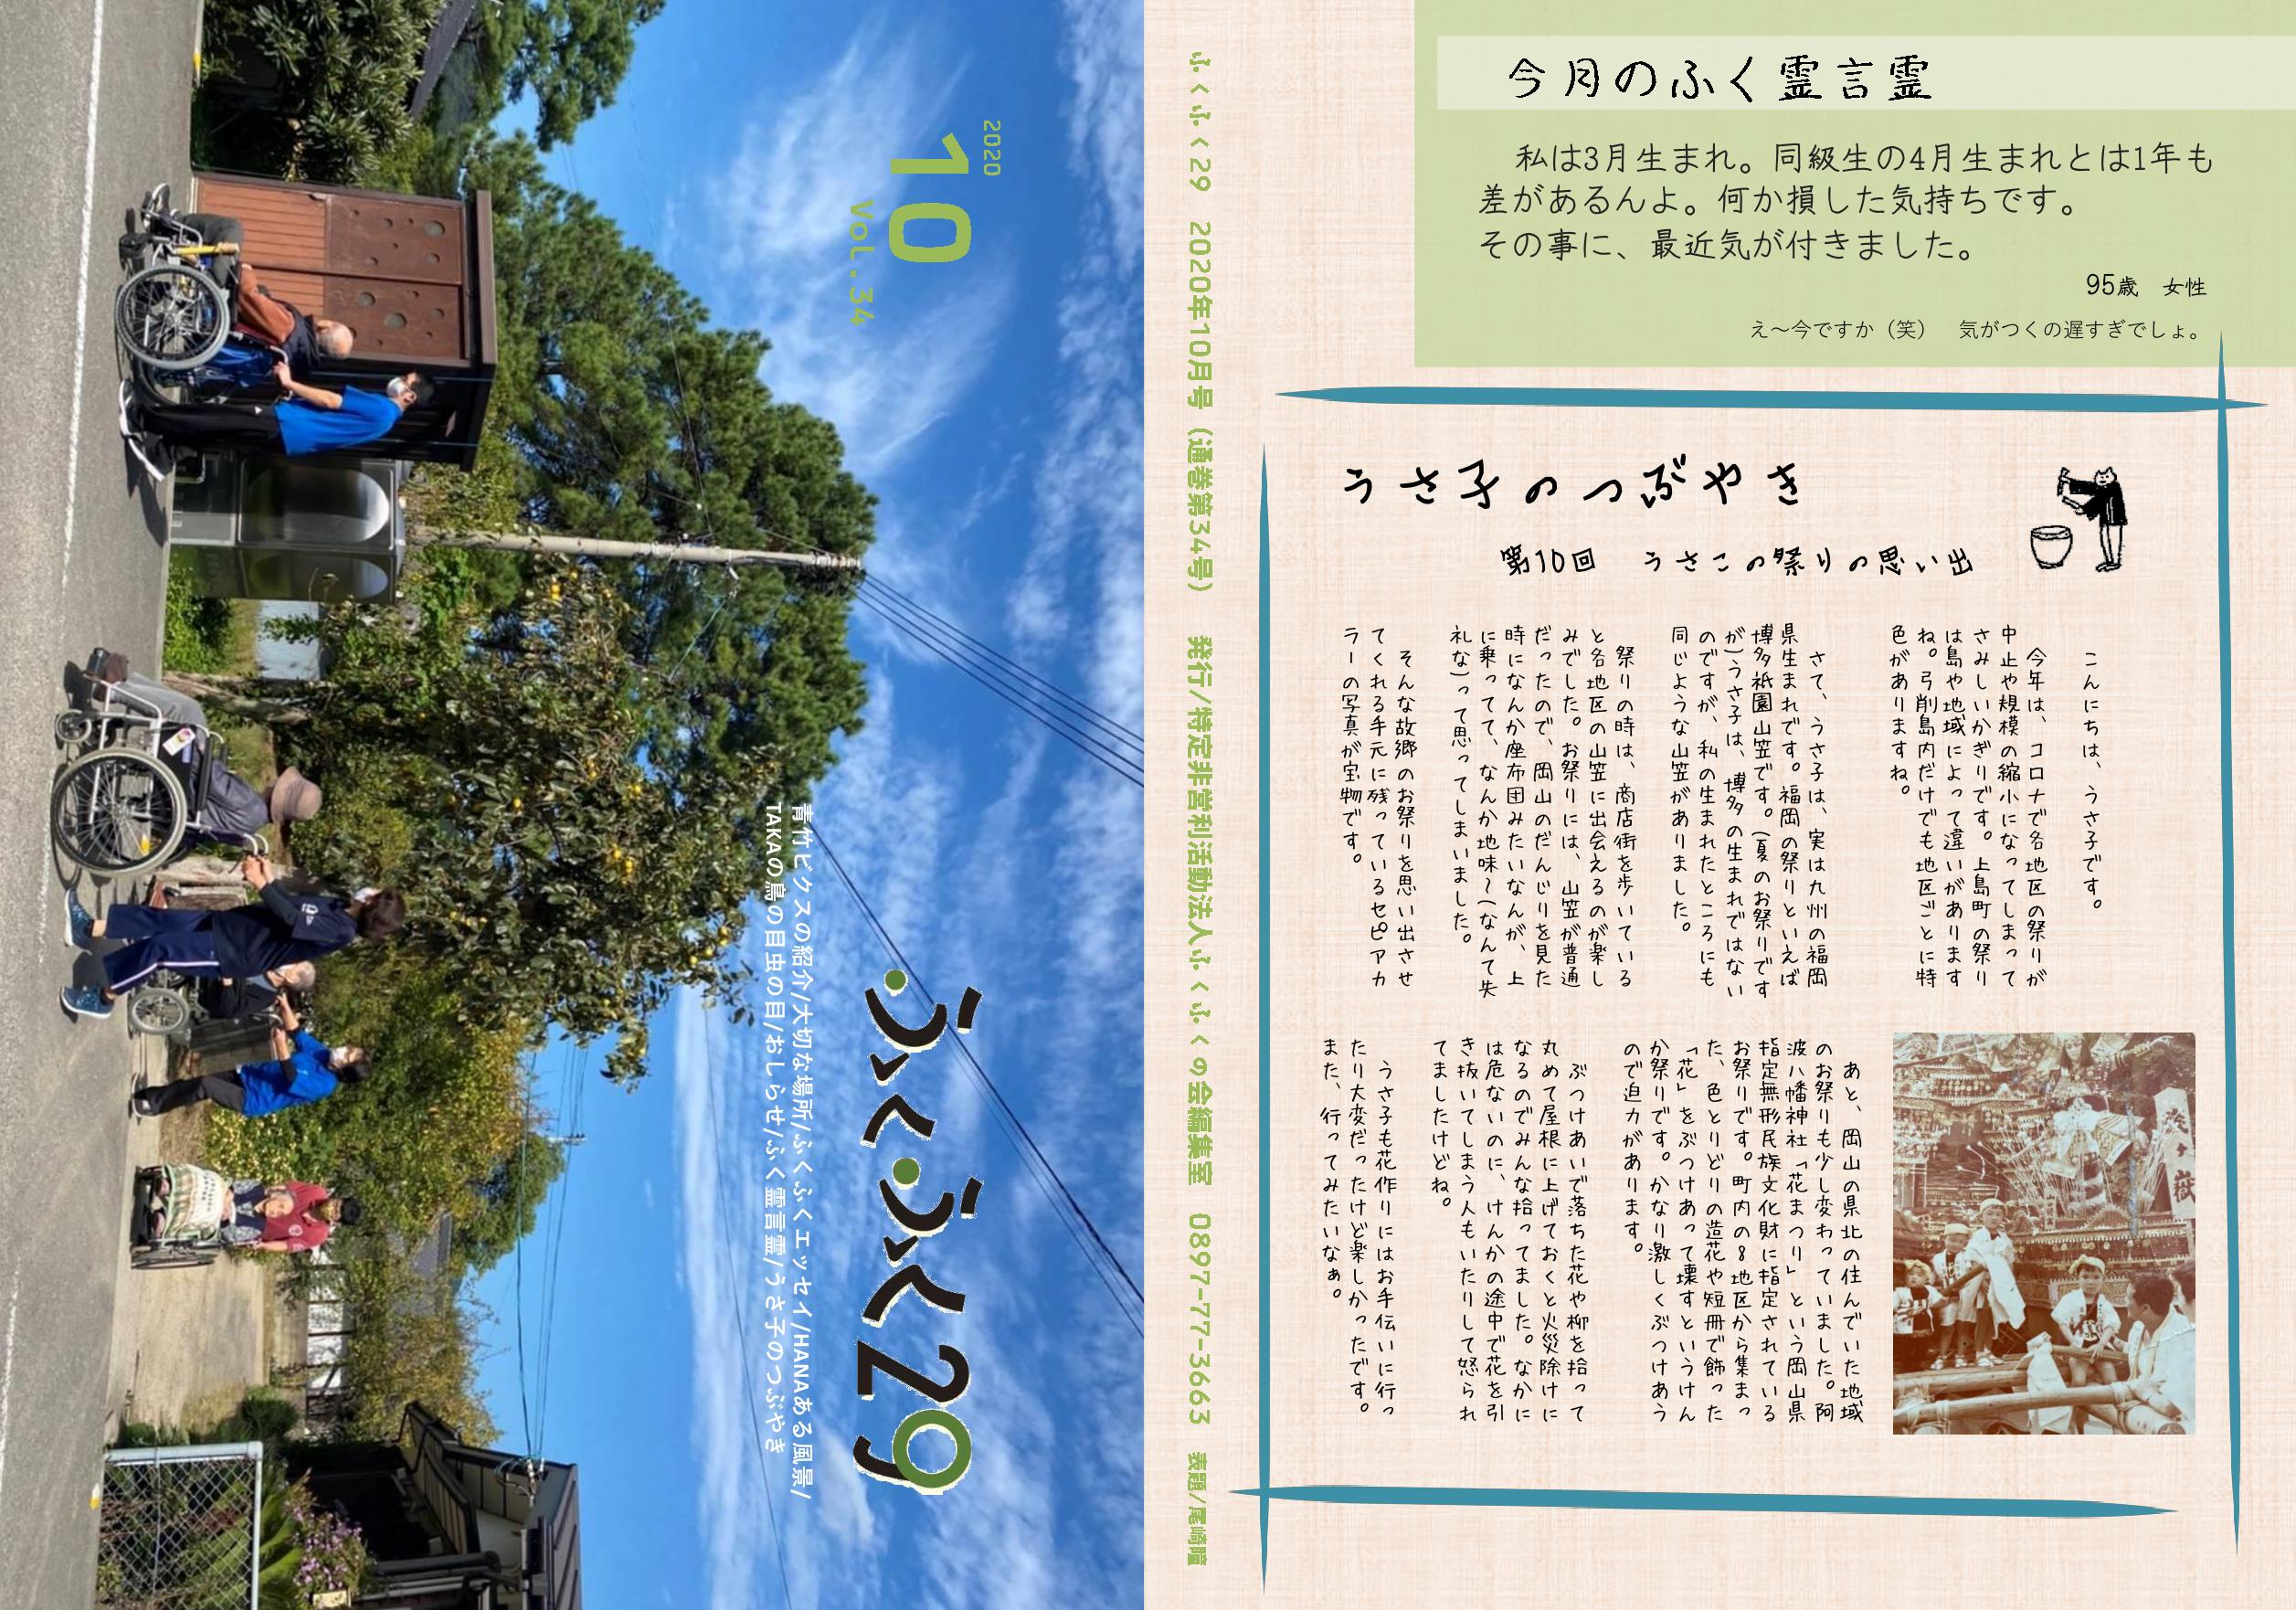 http://fukufukunokai.com/newsletter/images/10%E6%9C%88%E5%8F%B71_cropped_1.jpeg